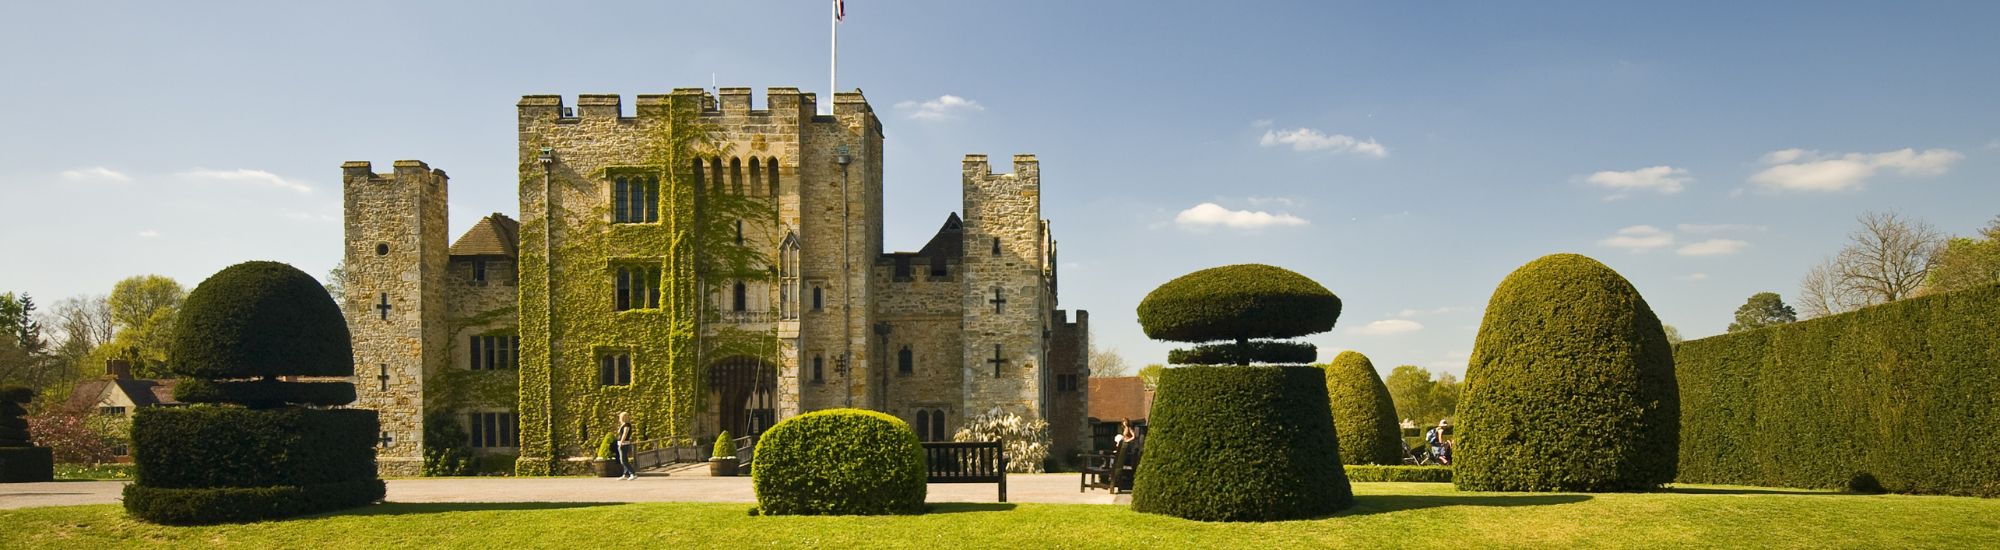 tourhub | Just Go Holidays | Hever Castle & The Garden of England - JG Explorer 